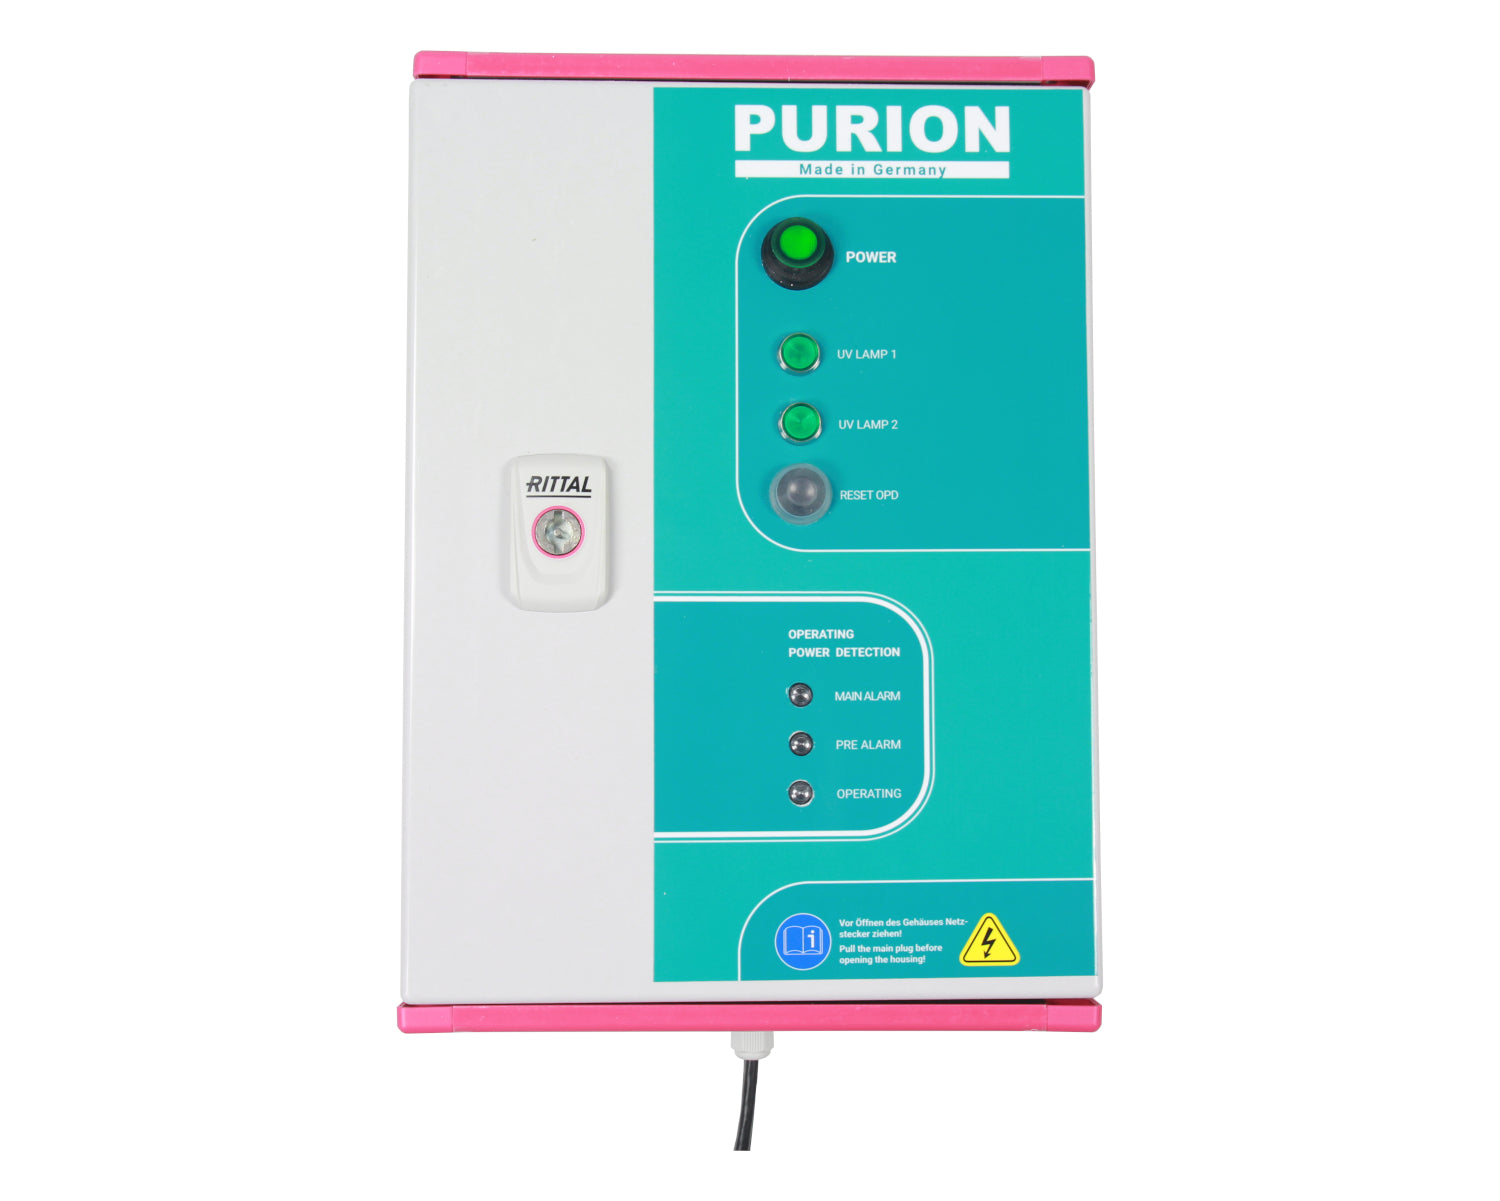 PURION 2500 H DUAL OPD, hergestellt von der PURION GmbH, nutzt die UV-C-Desinfektionstechnologie, um Legionellen effizient zu beseitigen und Energiekosten zu senken.